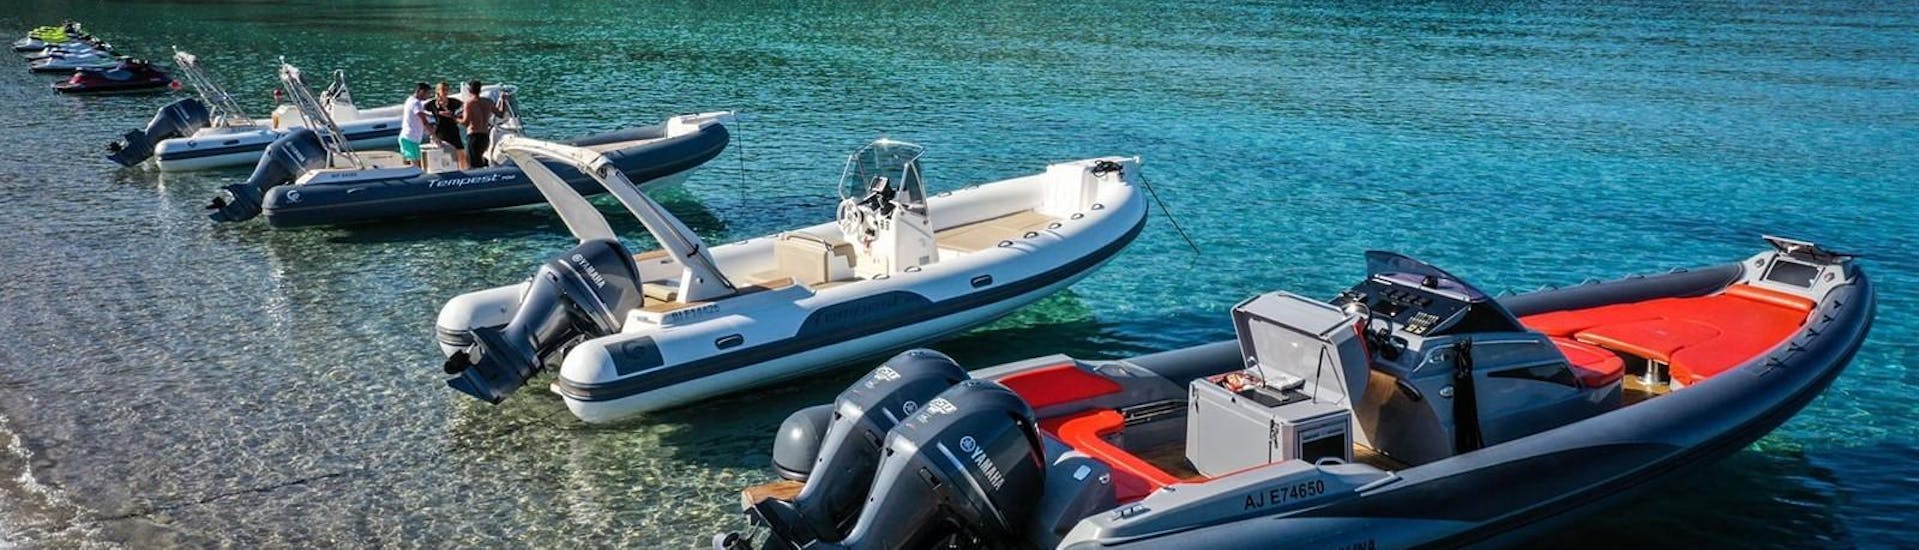 Les bateaux semi-rigides de Nautic Evasion Cargèse, sur l'eau, sont disponibles à la location.